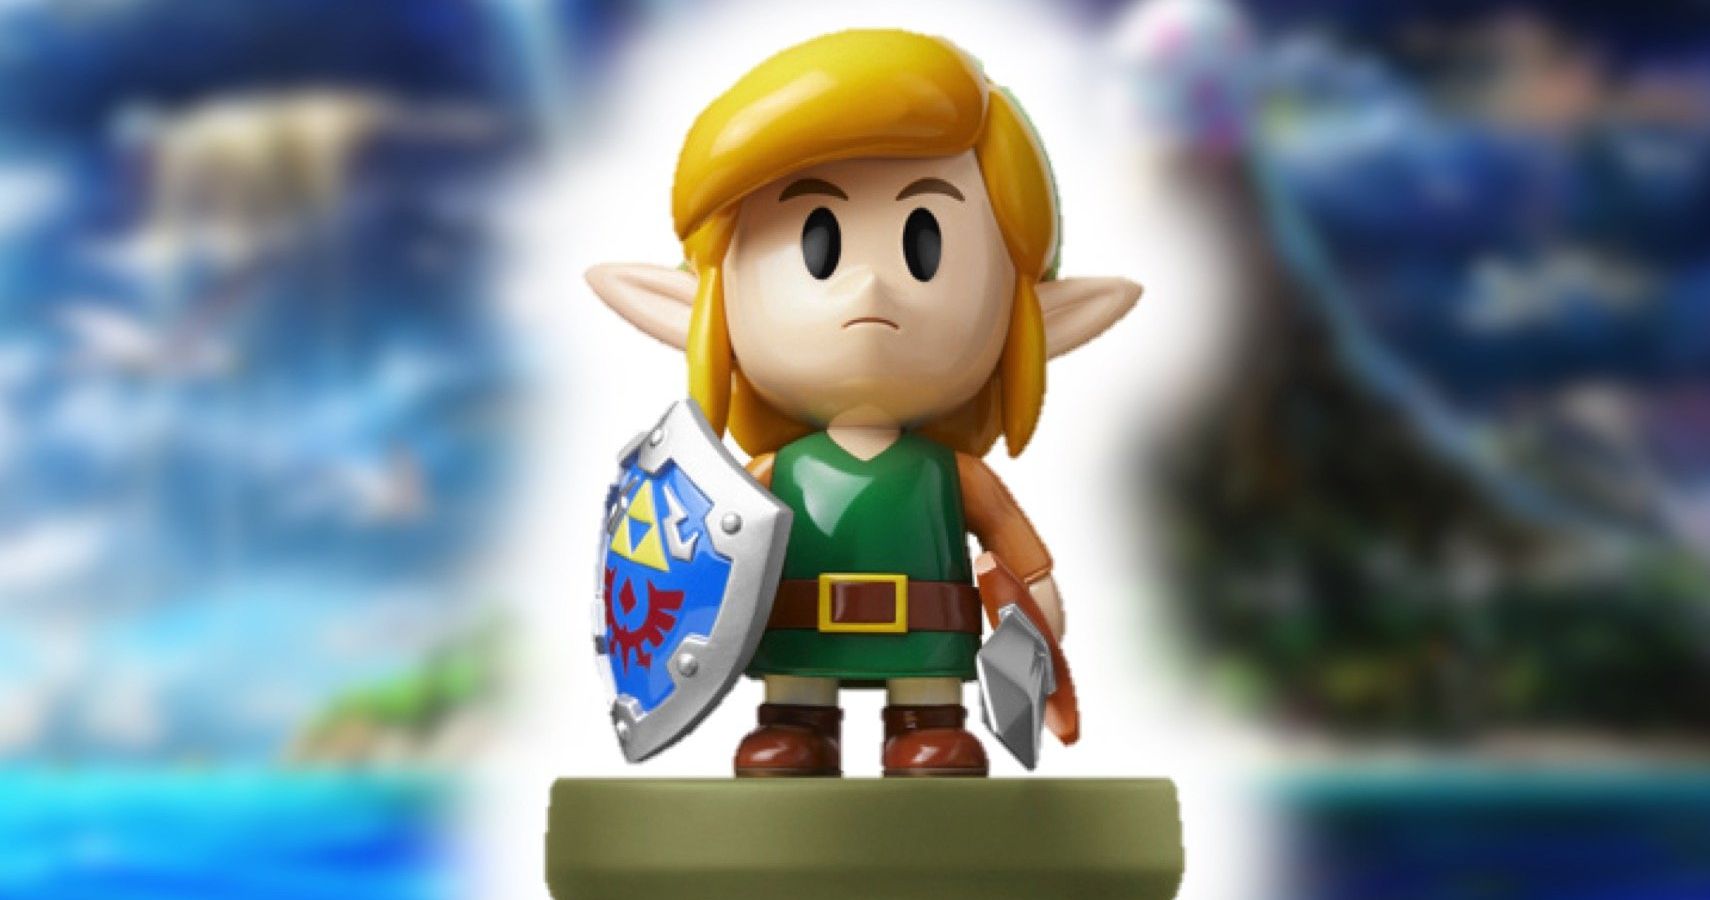 Nintendo amiibo The Legend of Zelda: Link's Awakening - Link